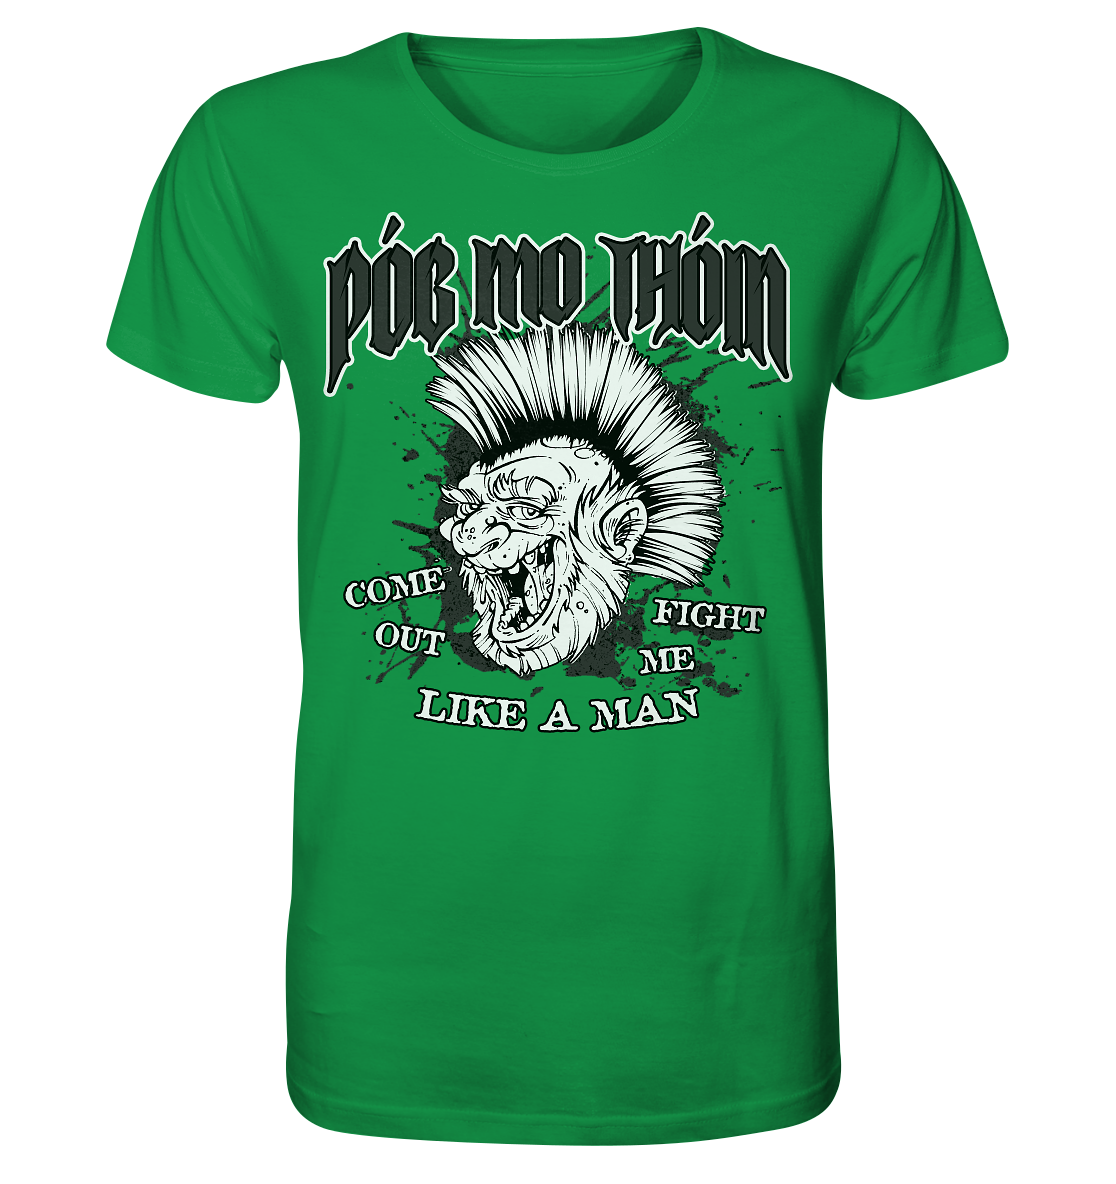 Póg Mo Thóin Streetwear "Come Out" - Organic Shirt